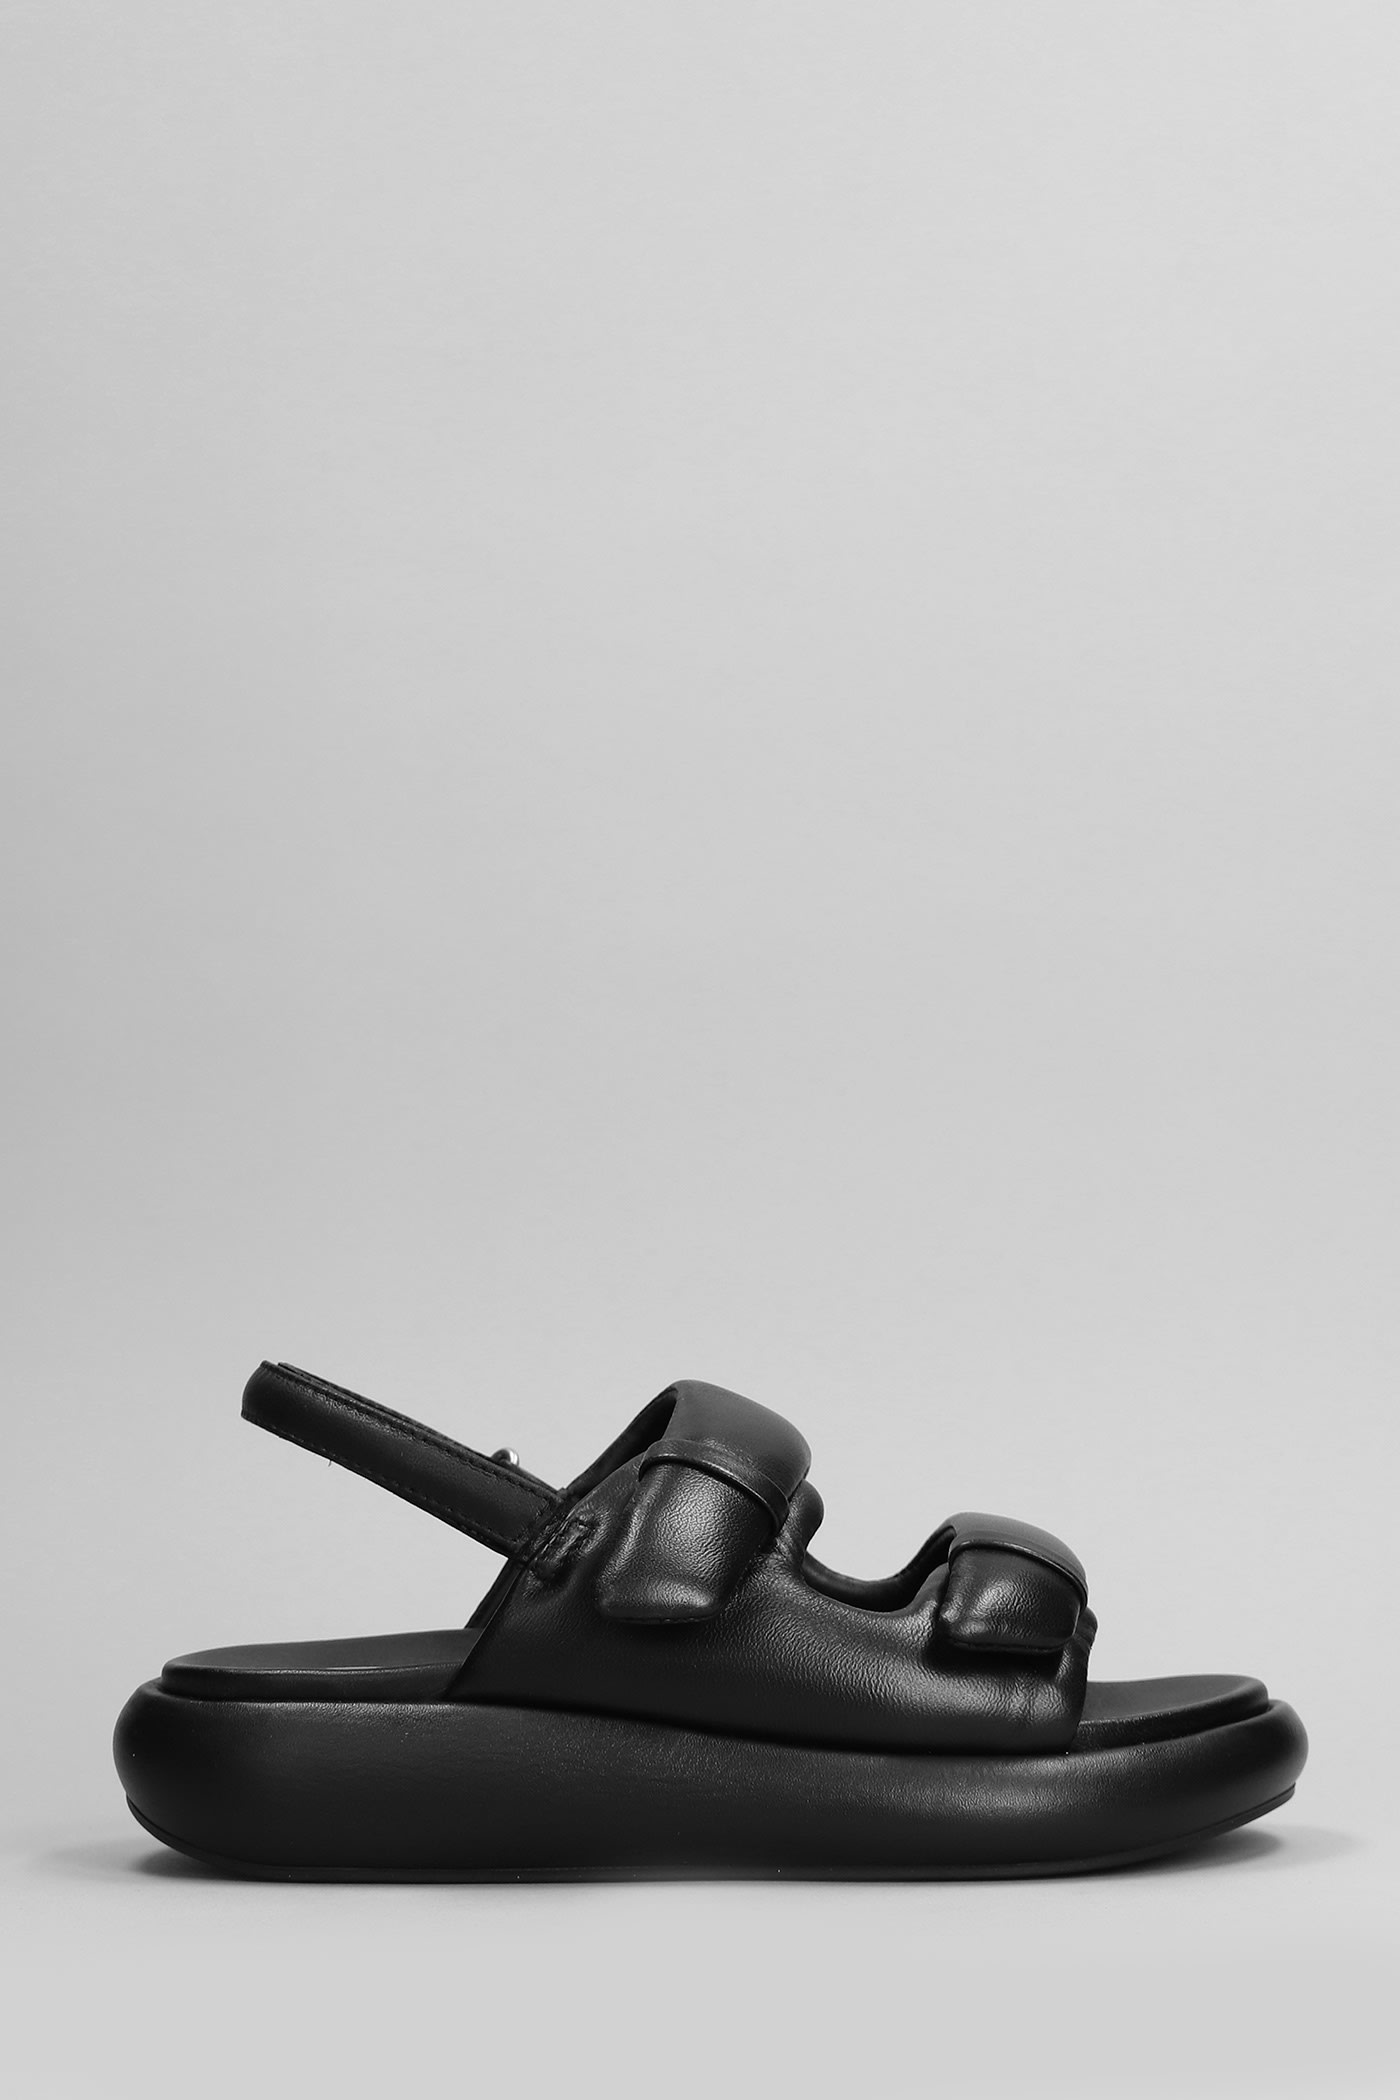 Vinci Sandals In Black Leather